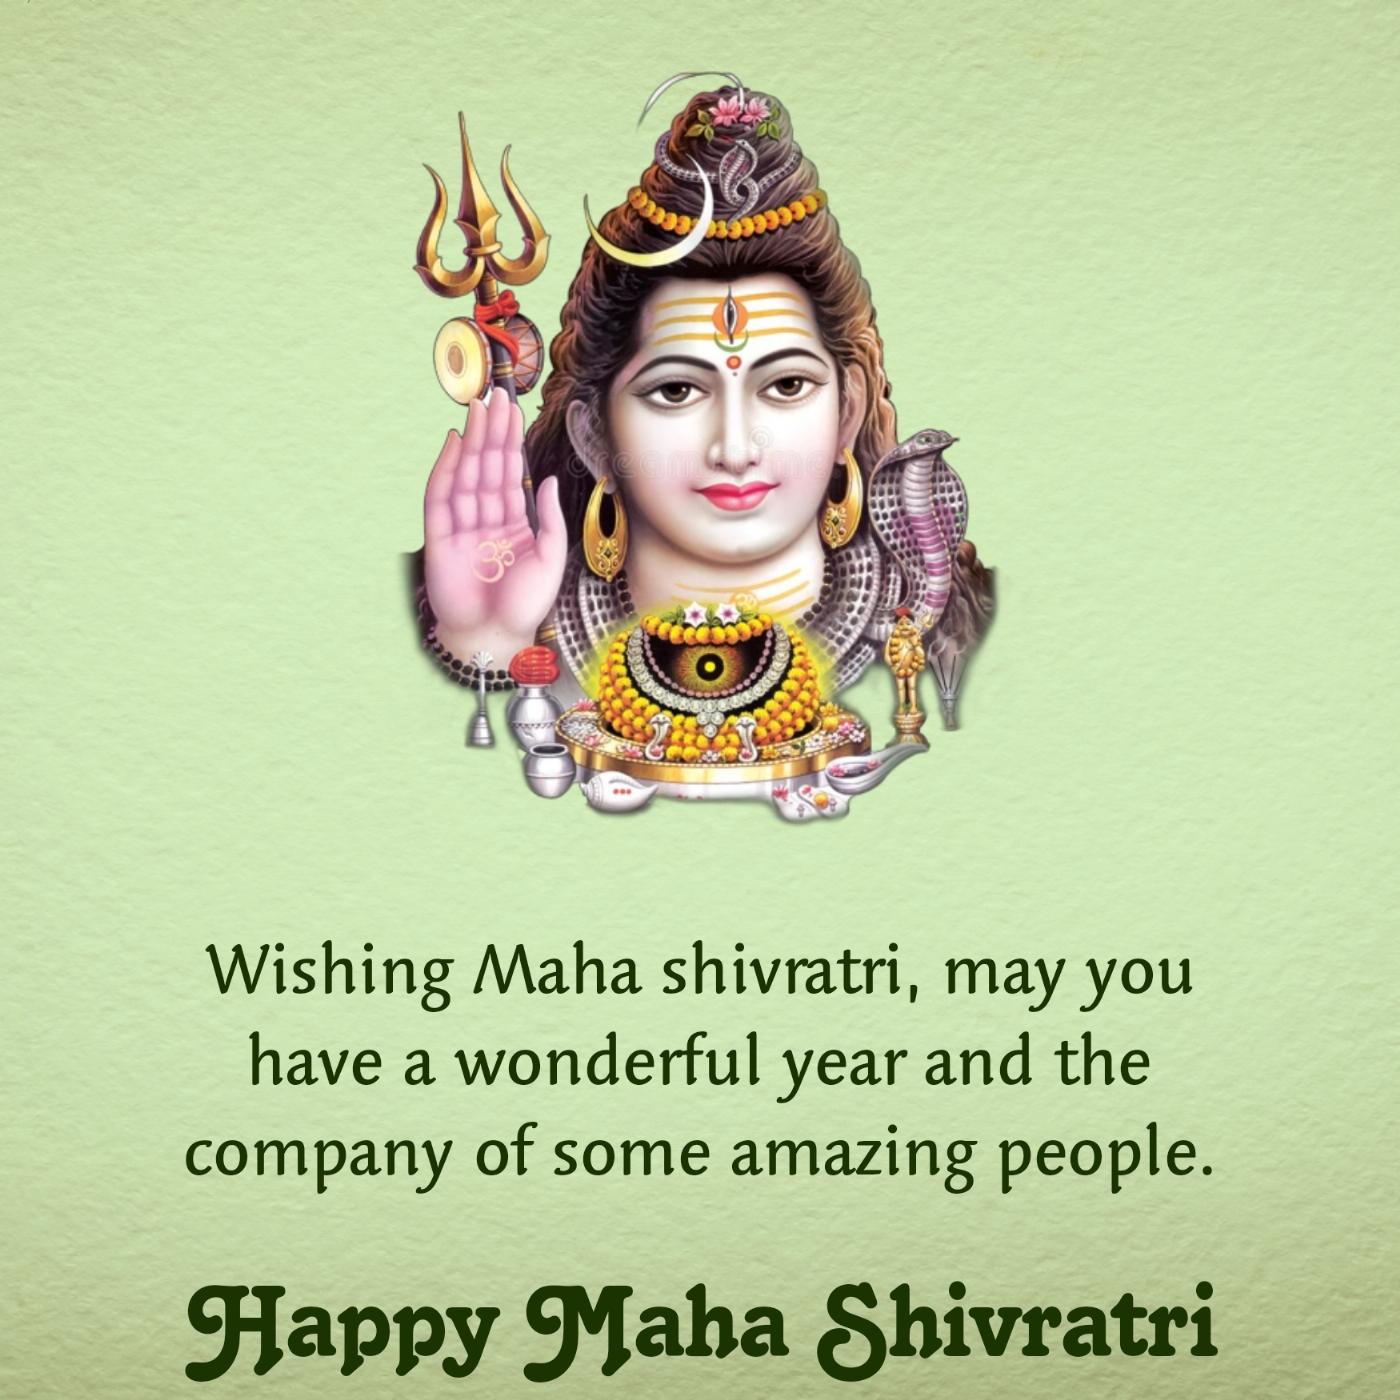 Wishing Maha shivratri may you have a wonderful year